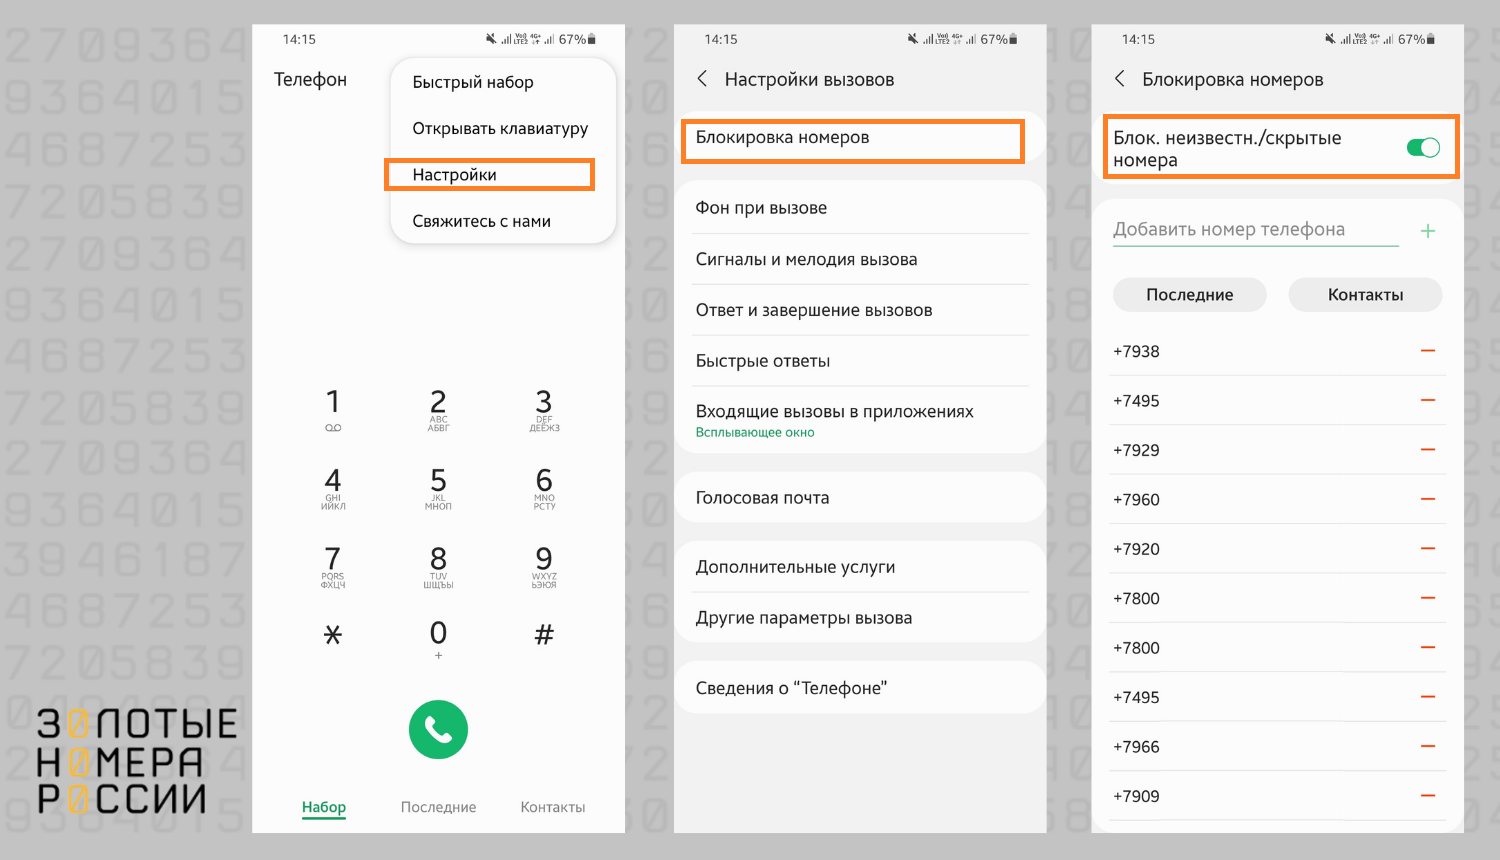 Телеграмм онлайн на русском вход по номеру телефона через смс бесплатно войти фото 111